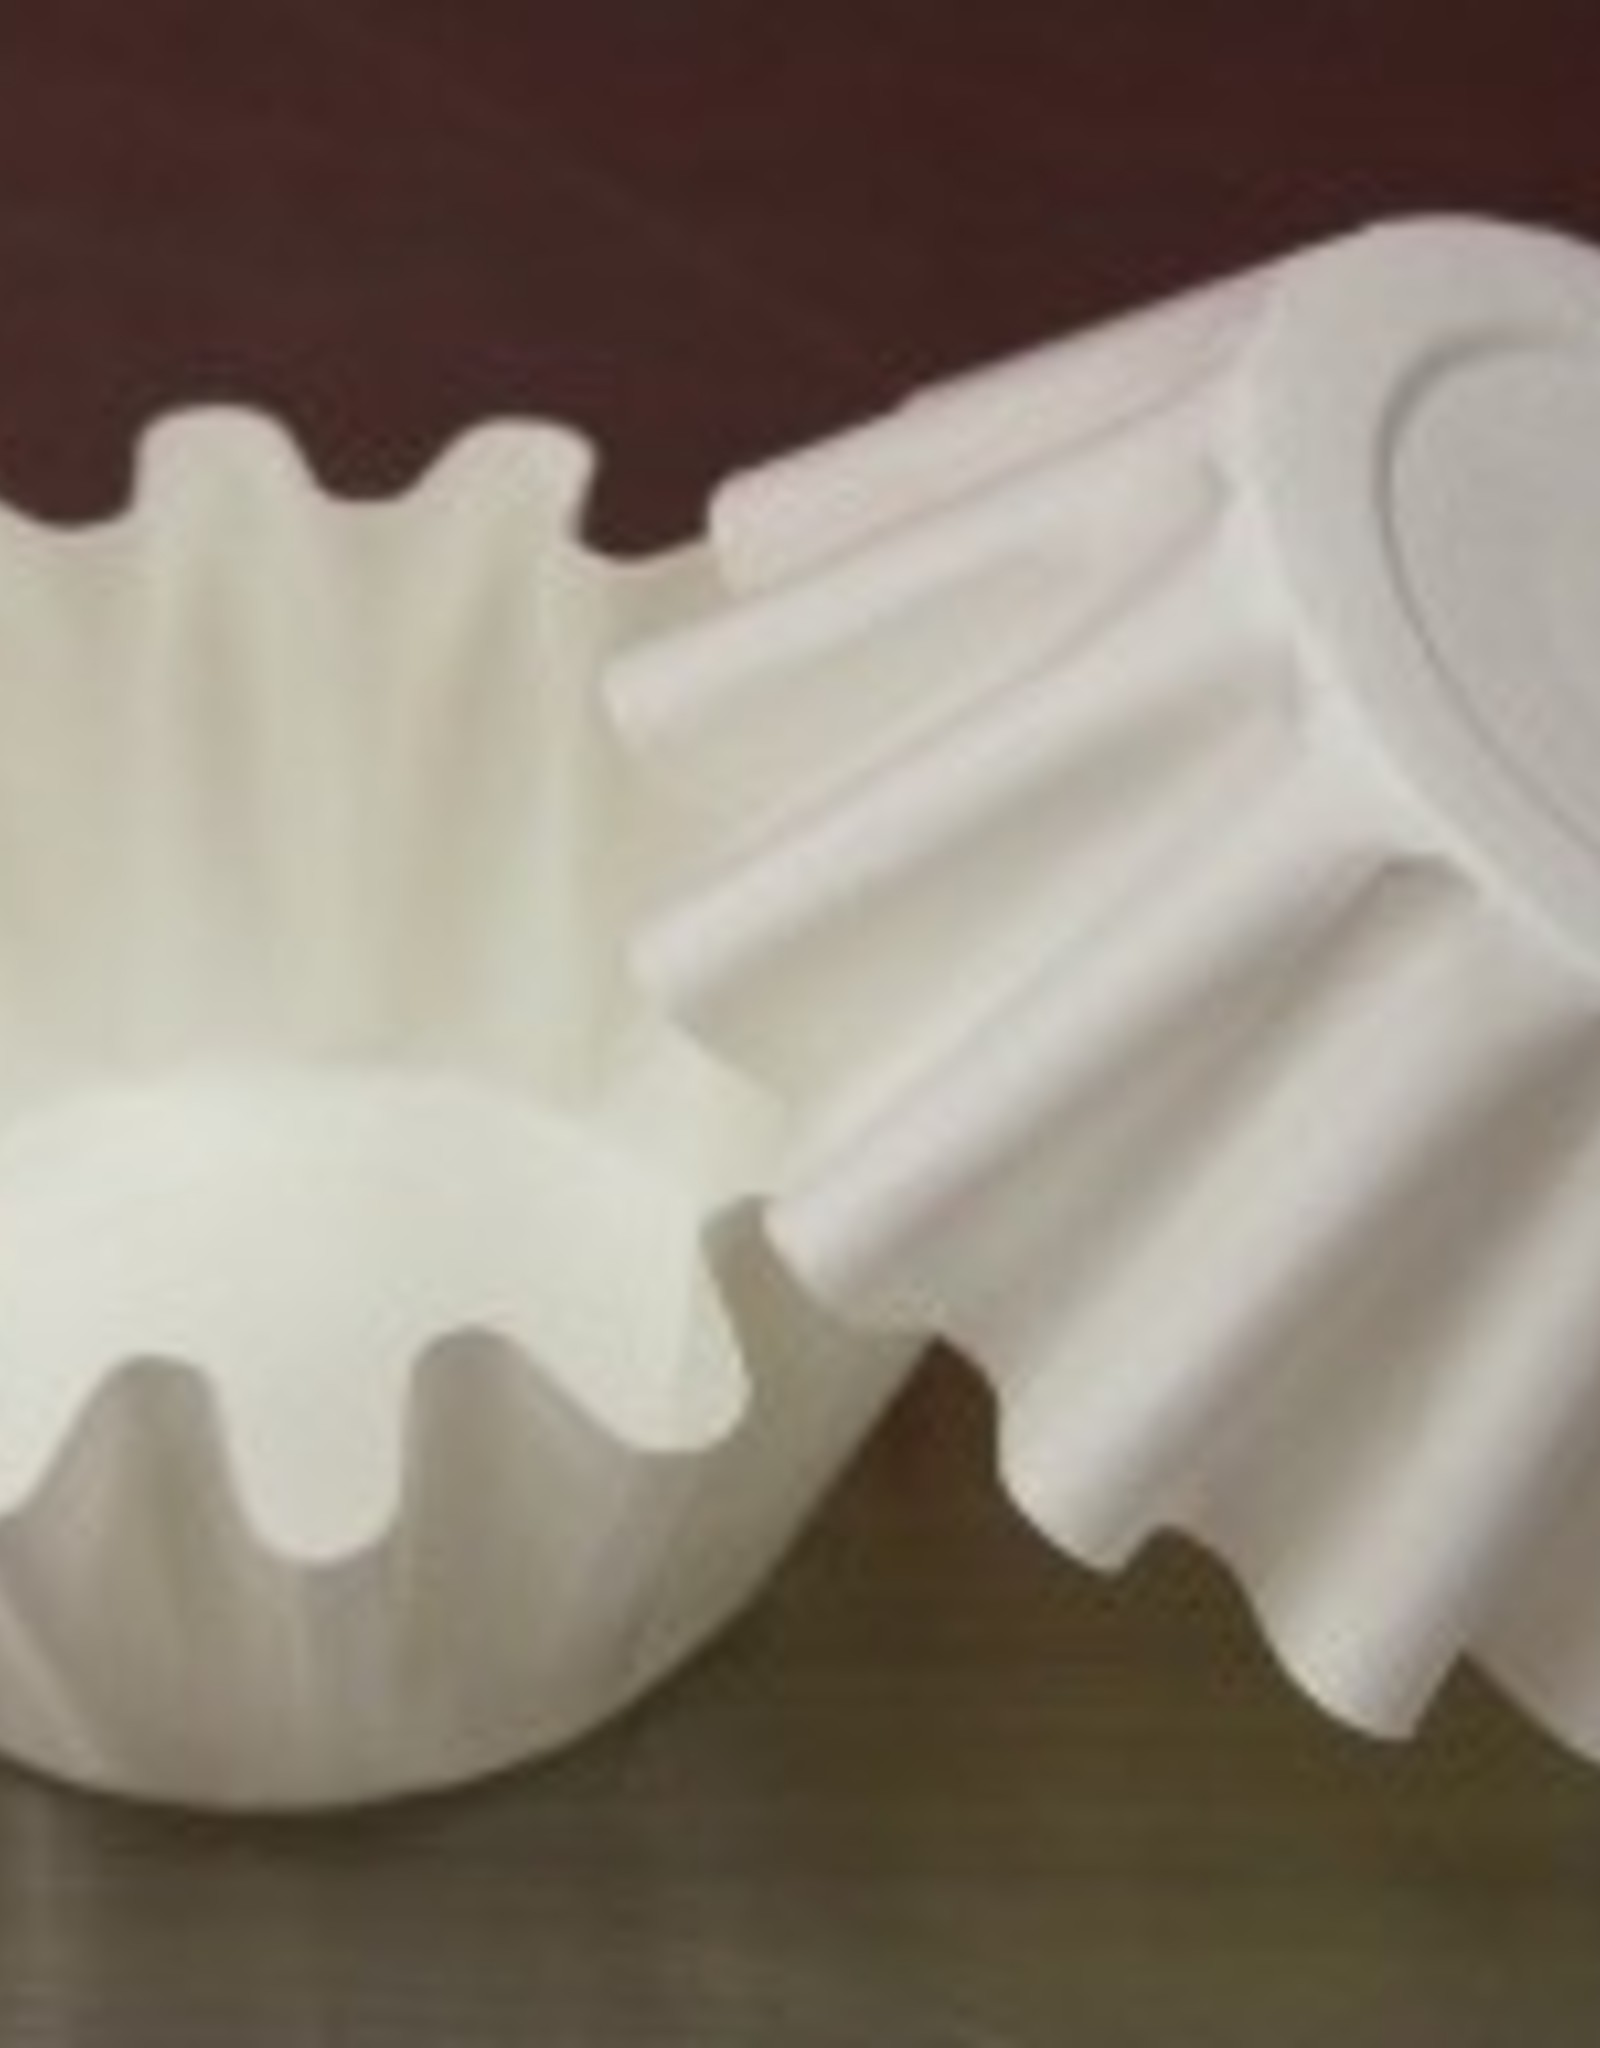 White Brioche / Floret Baking Cups